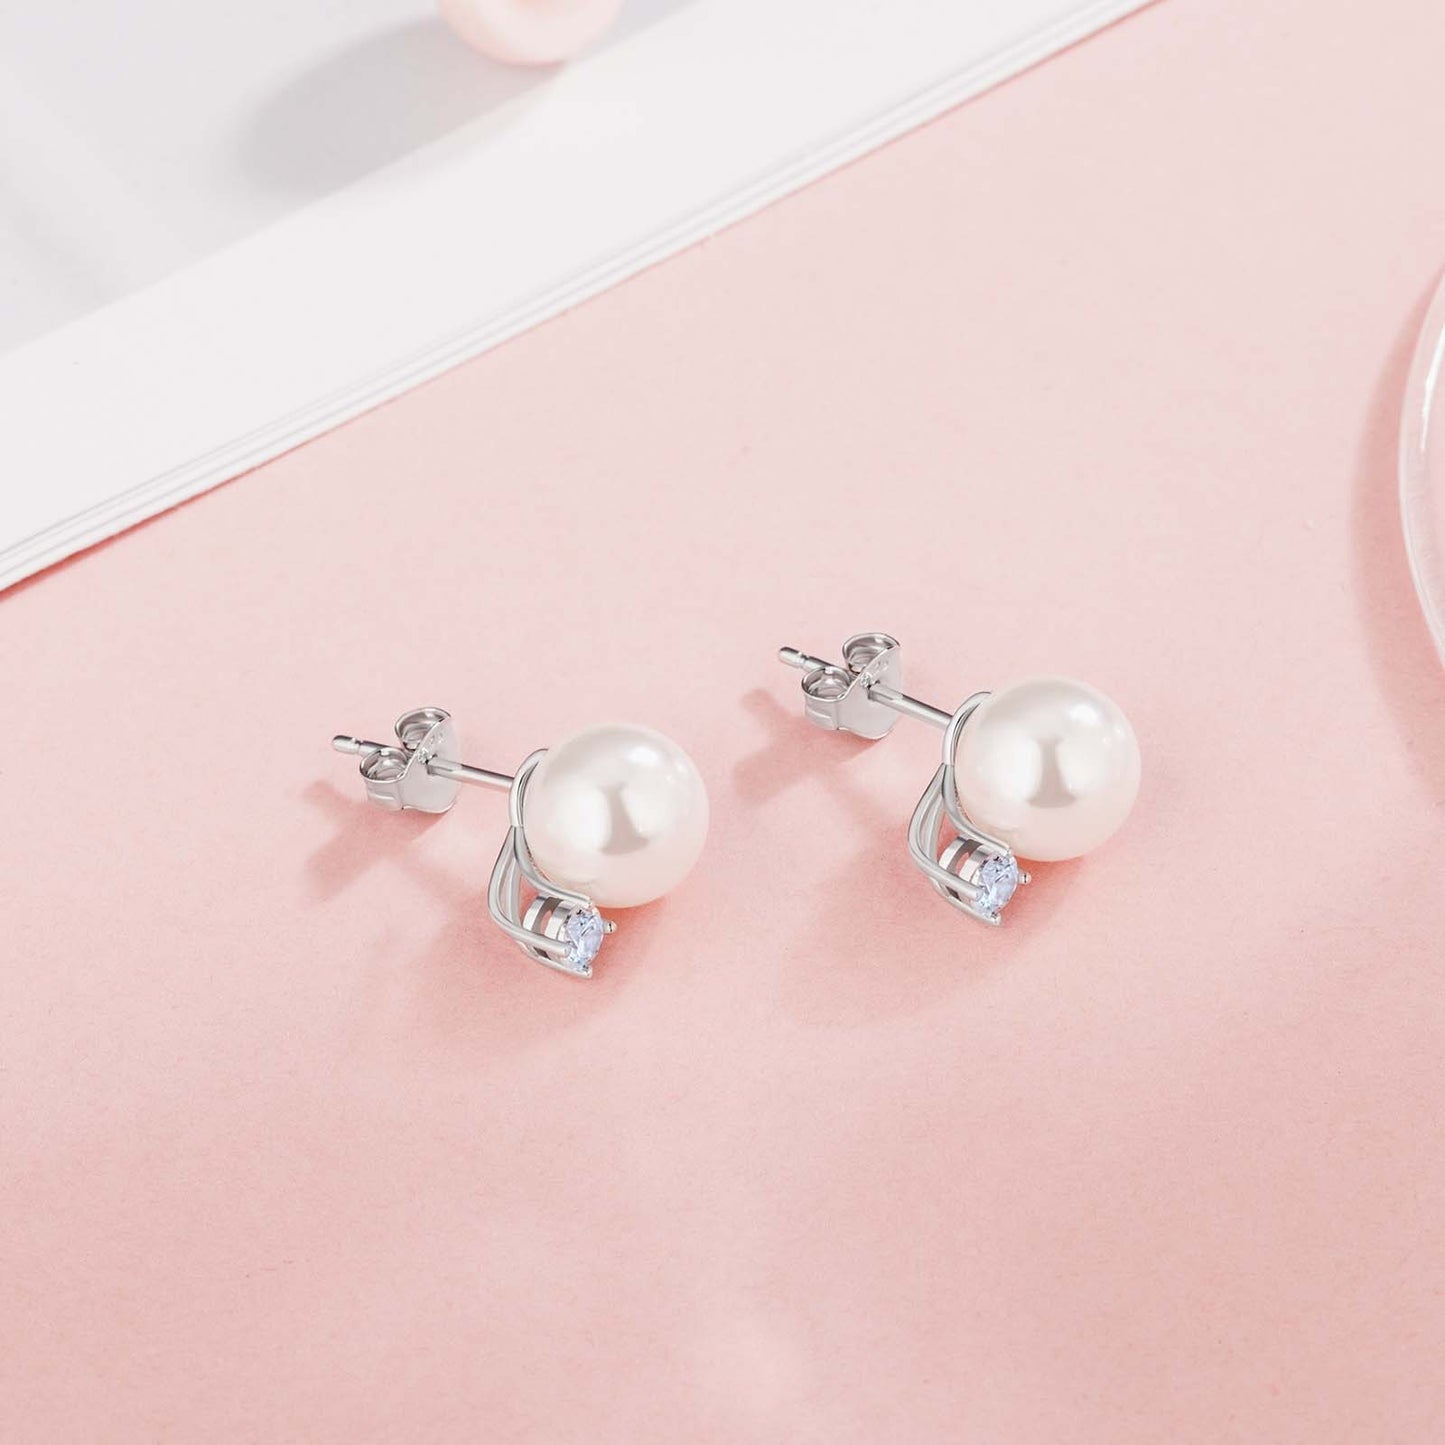 Scarabeaus Pearls  Stud Earrings for Women